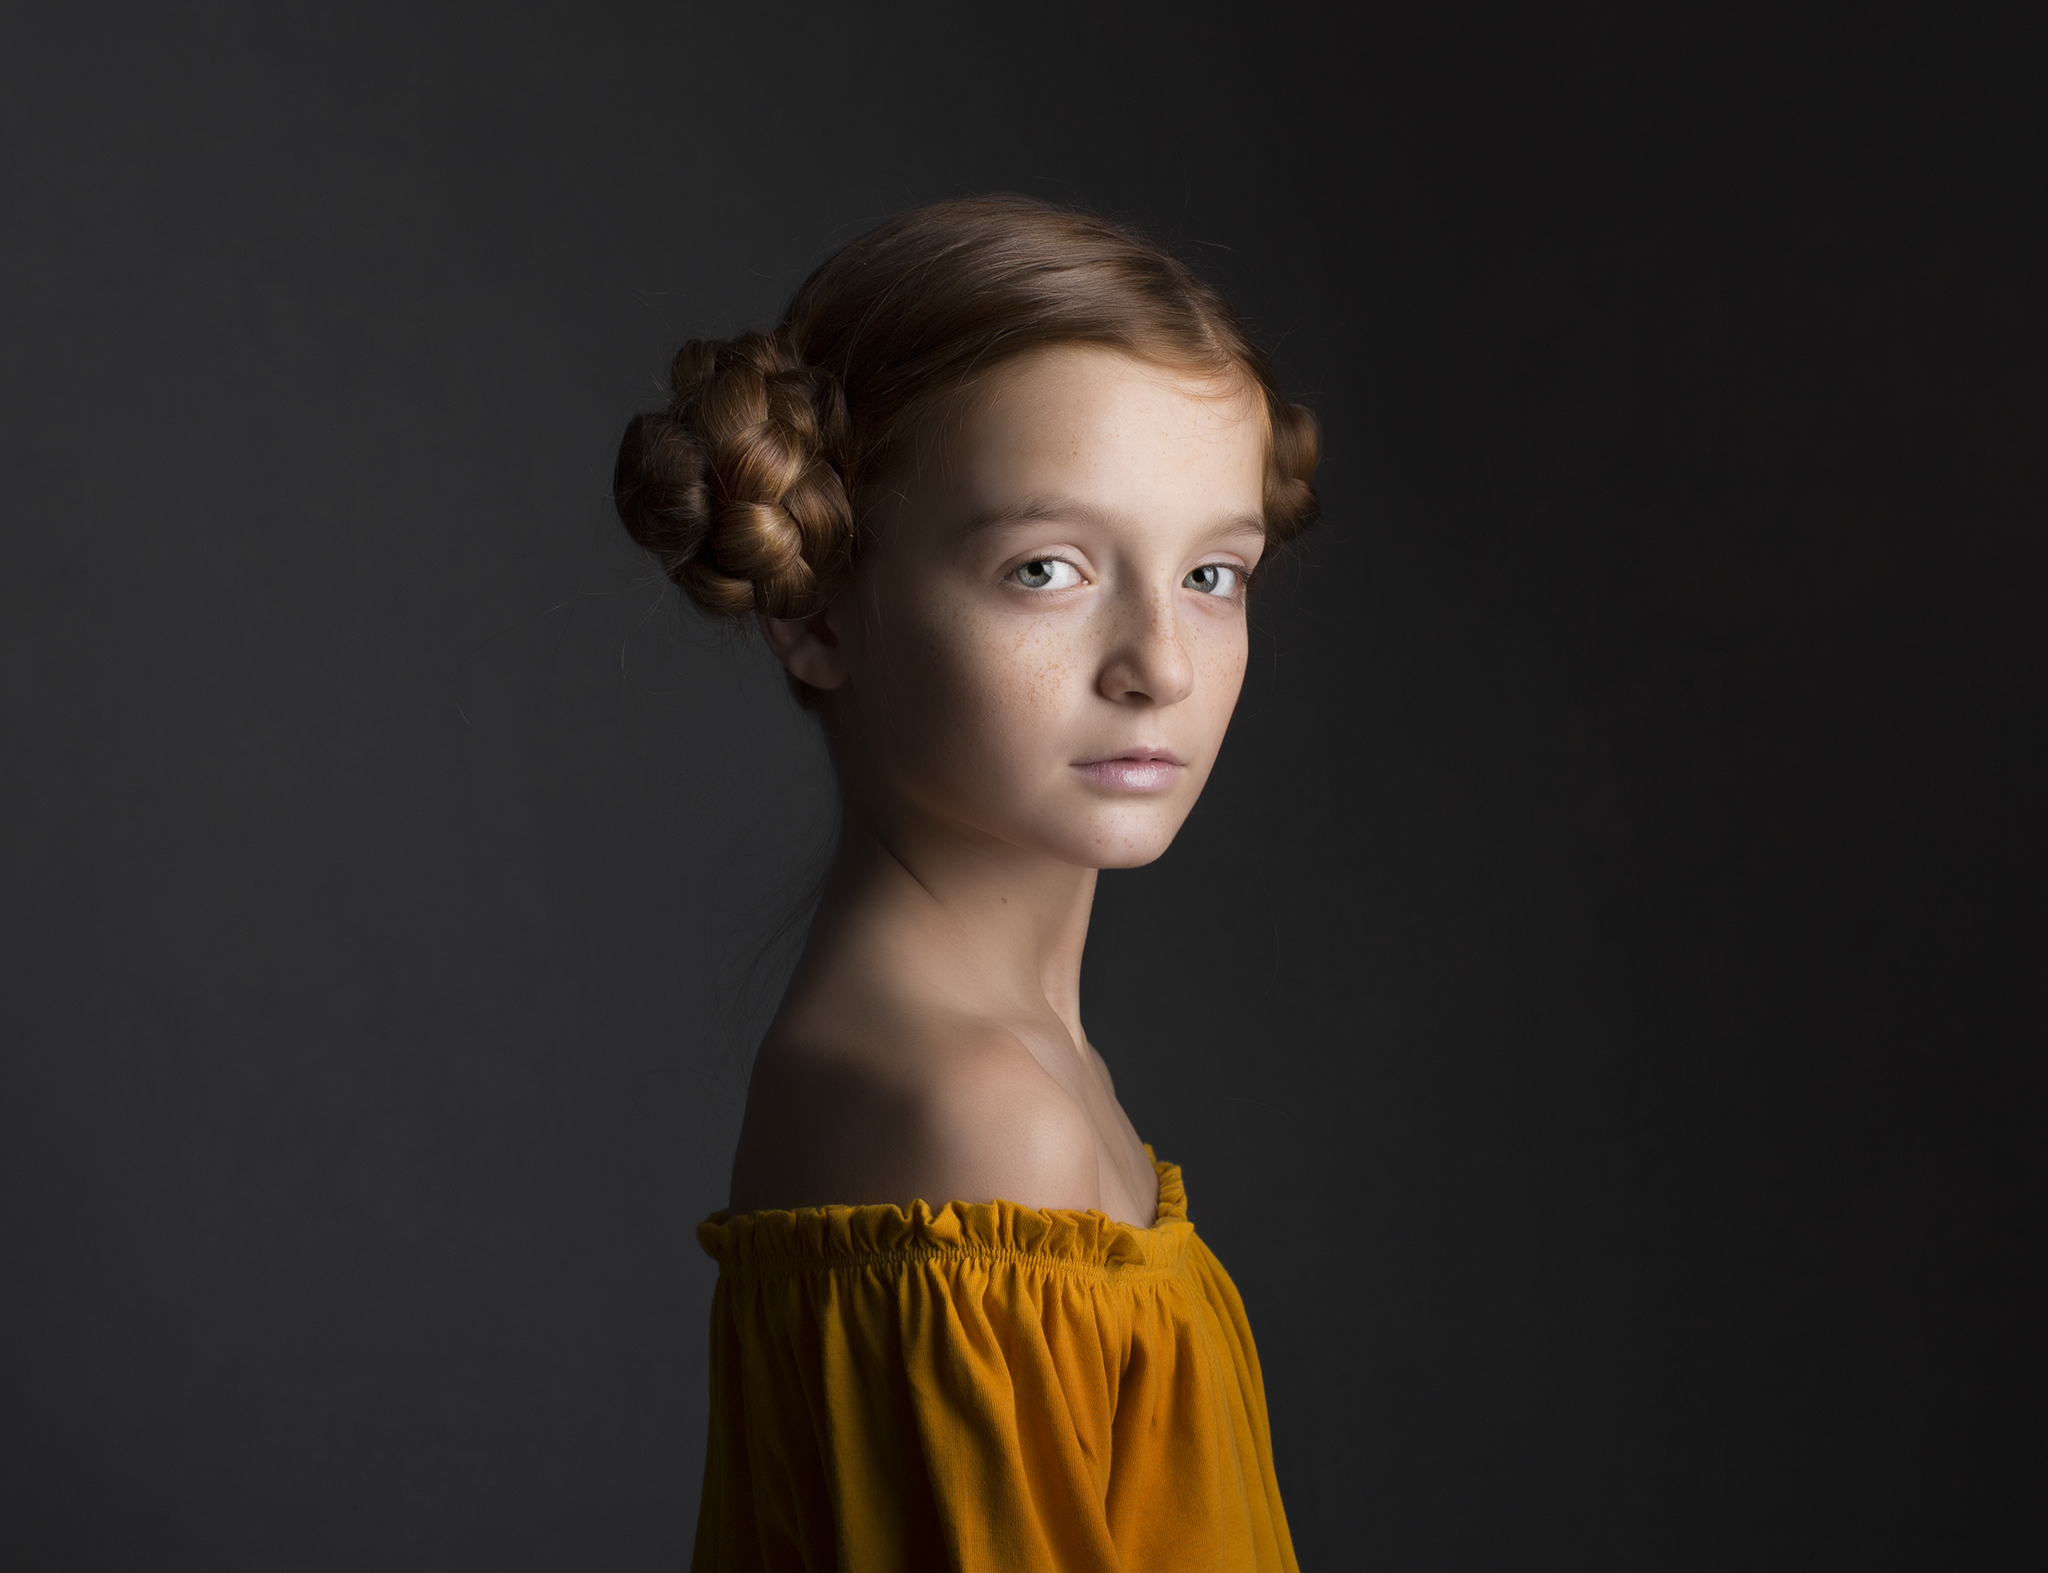 elizabethg_photography_hertfordshire_fineart_child_portrait_model_morgan_3.jpg